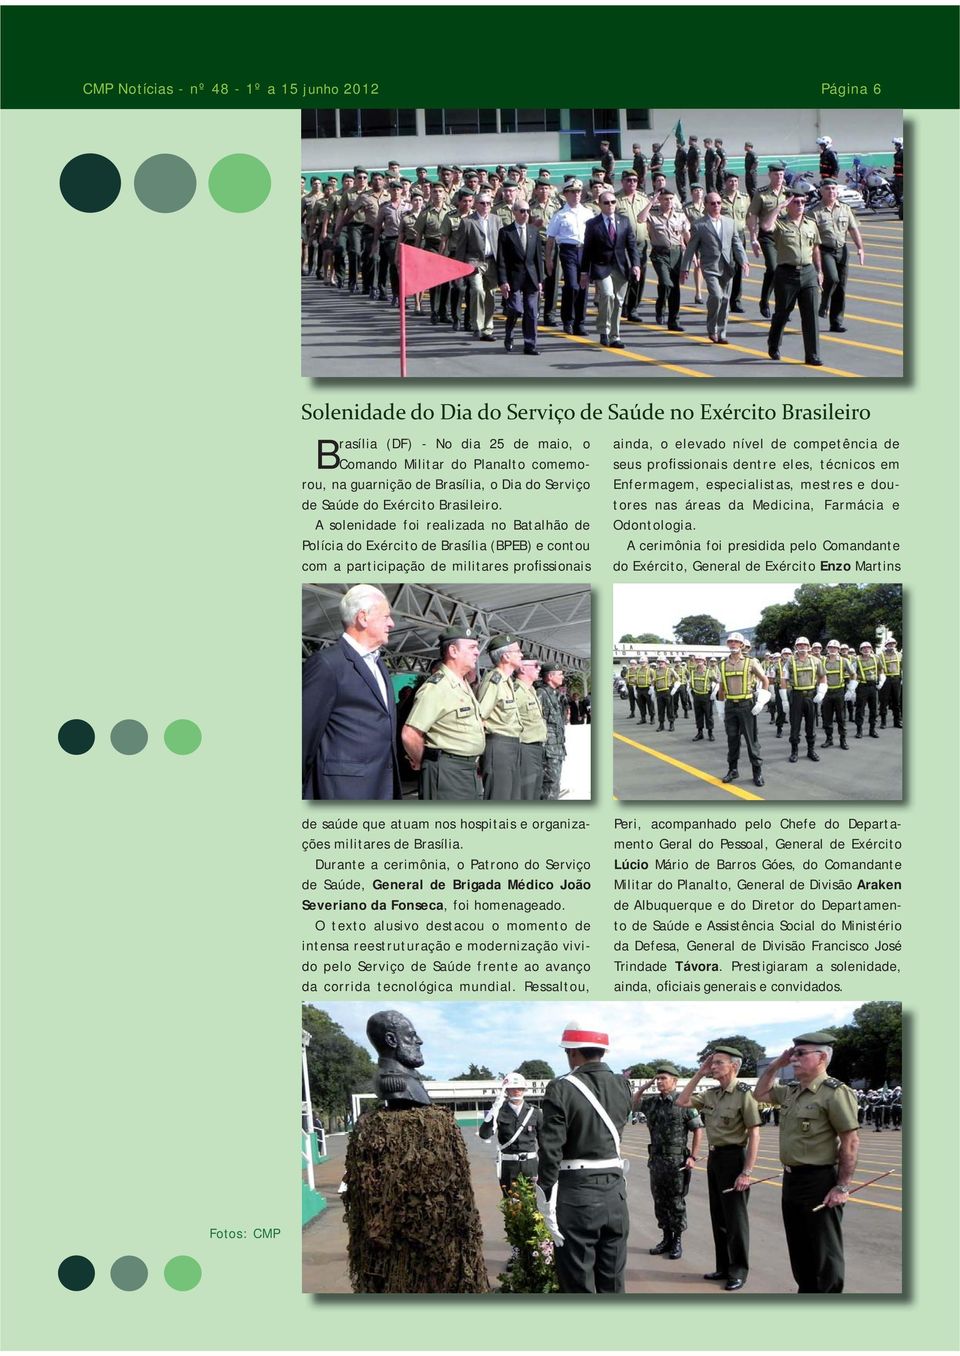 A solenidade foi realizada no Batalhão de Polícia do Exército de Brasília (BPEB) e contou com a participação de militares profissionais ainda, o elevado nível de competência de seus profissionais